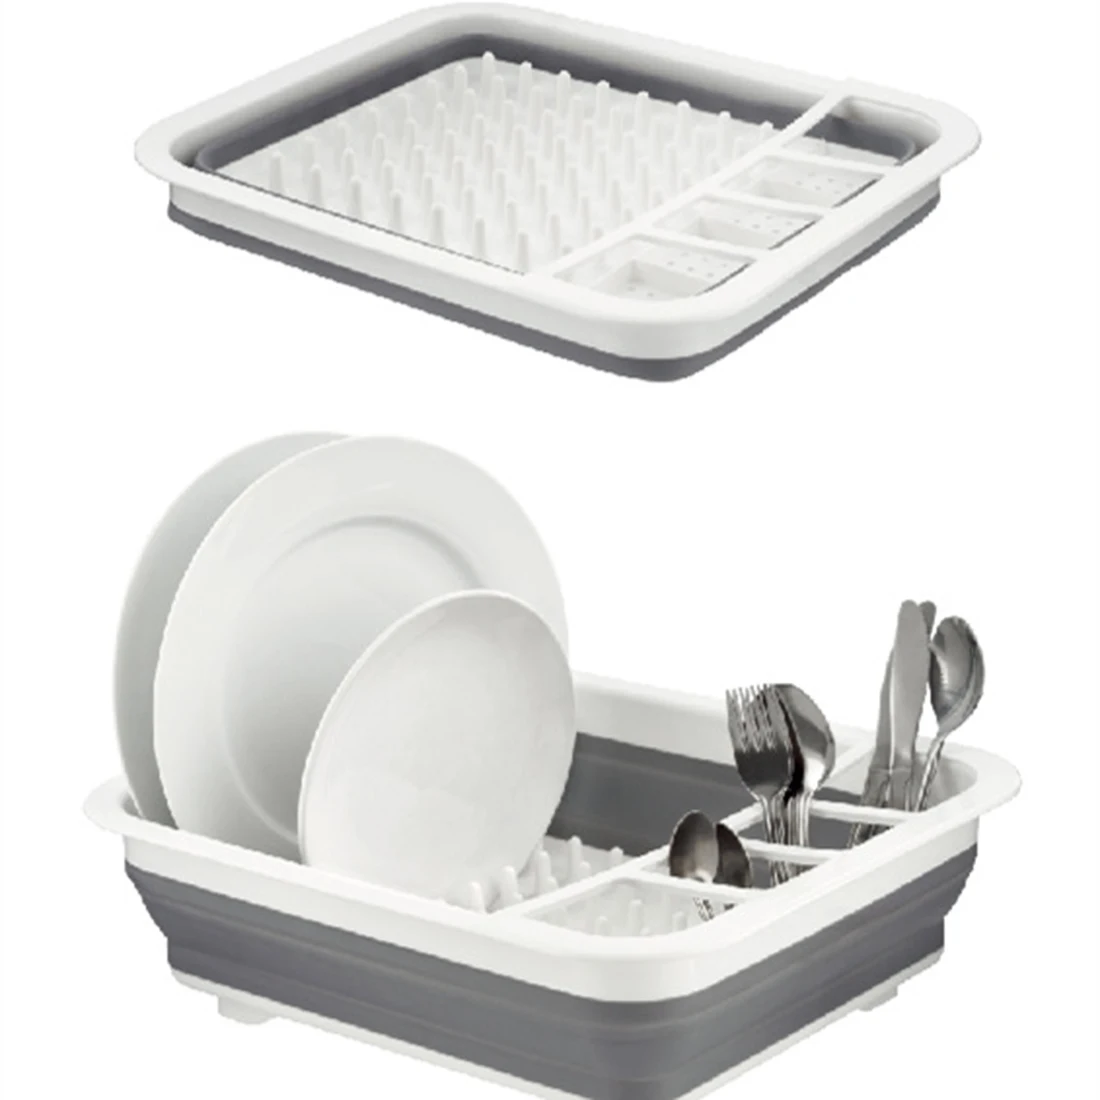 HIPSTEEN Складная посуда сушилка стойка для столовых приборов чаша Органайзер держатель стеллаж для хранения пластмассовый контейнер для хранения кухонные принадлежности